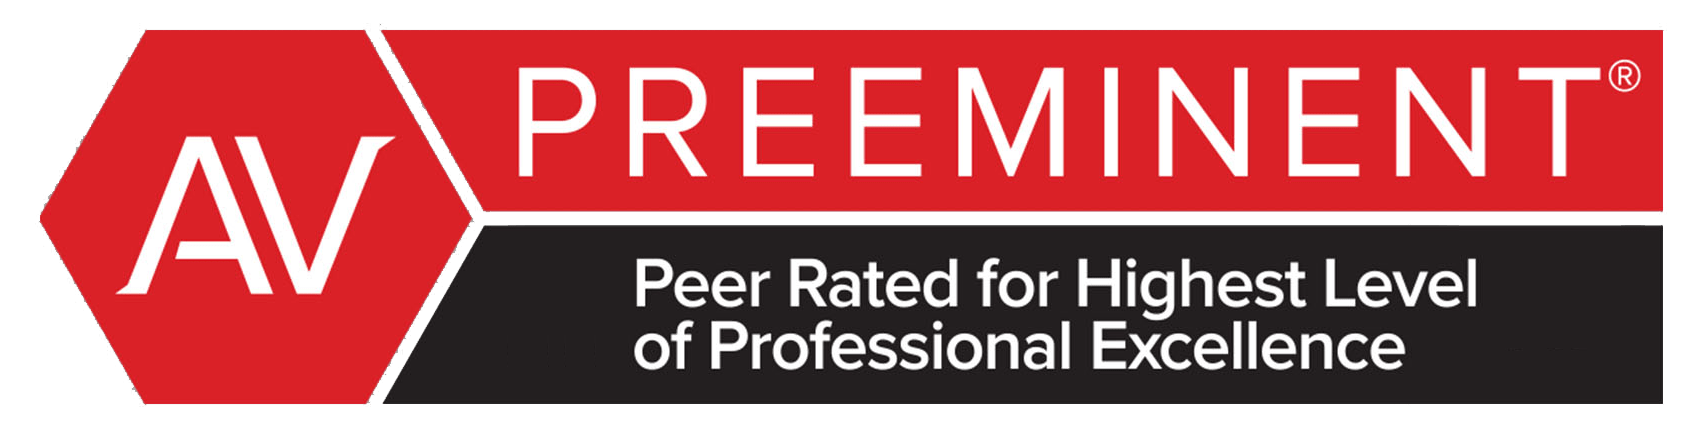 AV | Preeminent | Peer Rated For Highest Level Of Professional Excellence